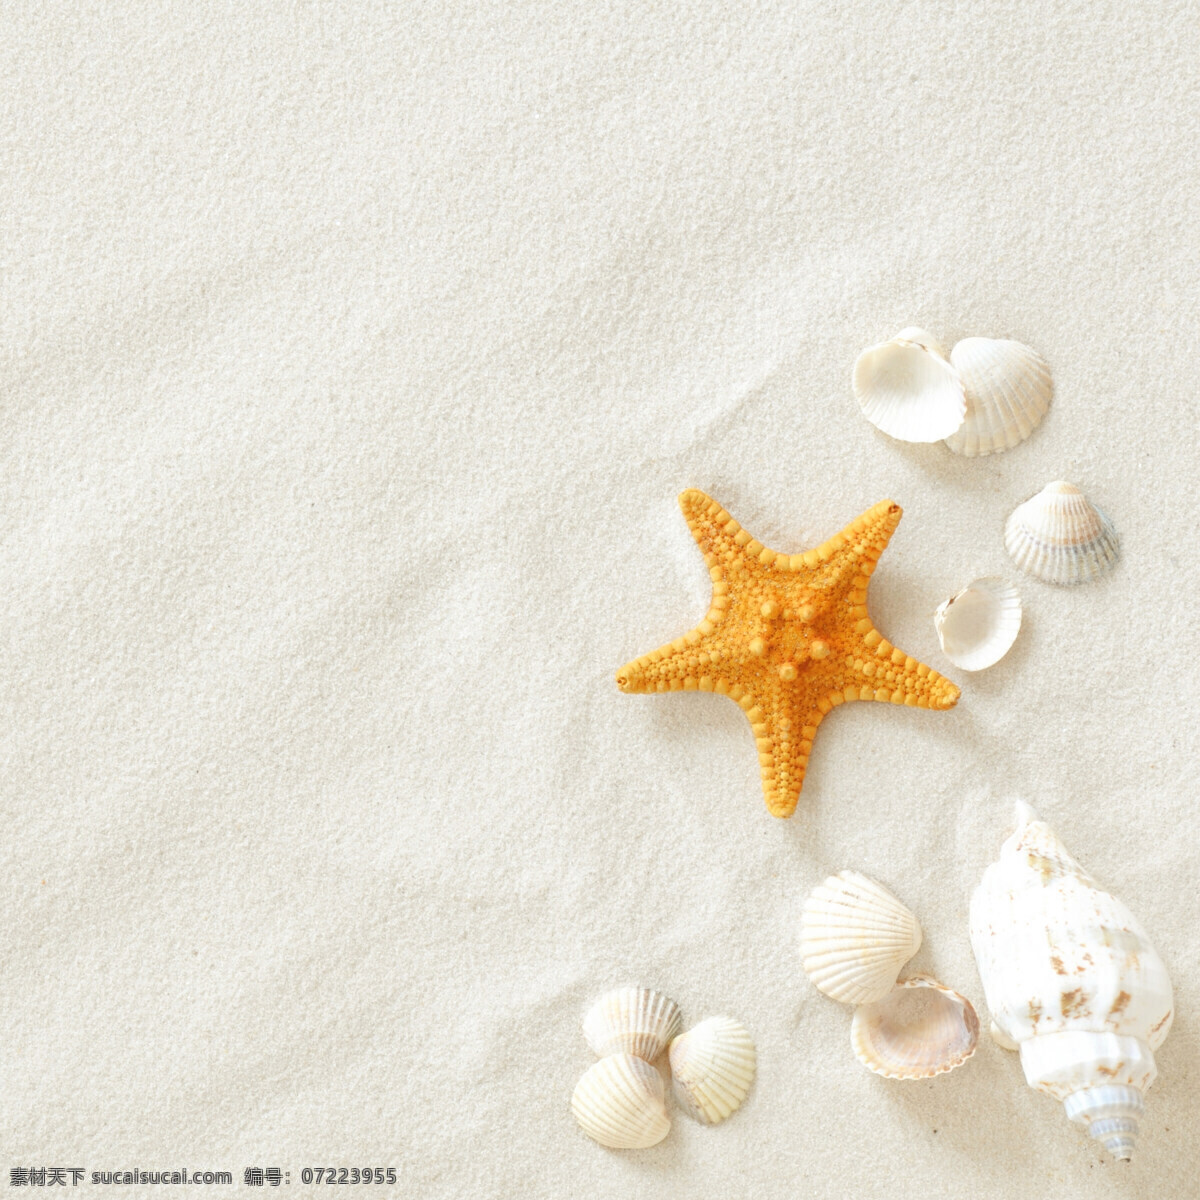 沙滩上的海星 海滩 沙滩 贝壳 海星 海螺 休闲 假日 风景 自然风光 高清图片 自然景观 自然风景 高清